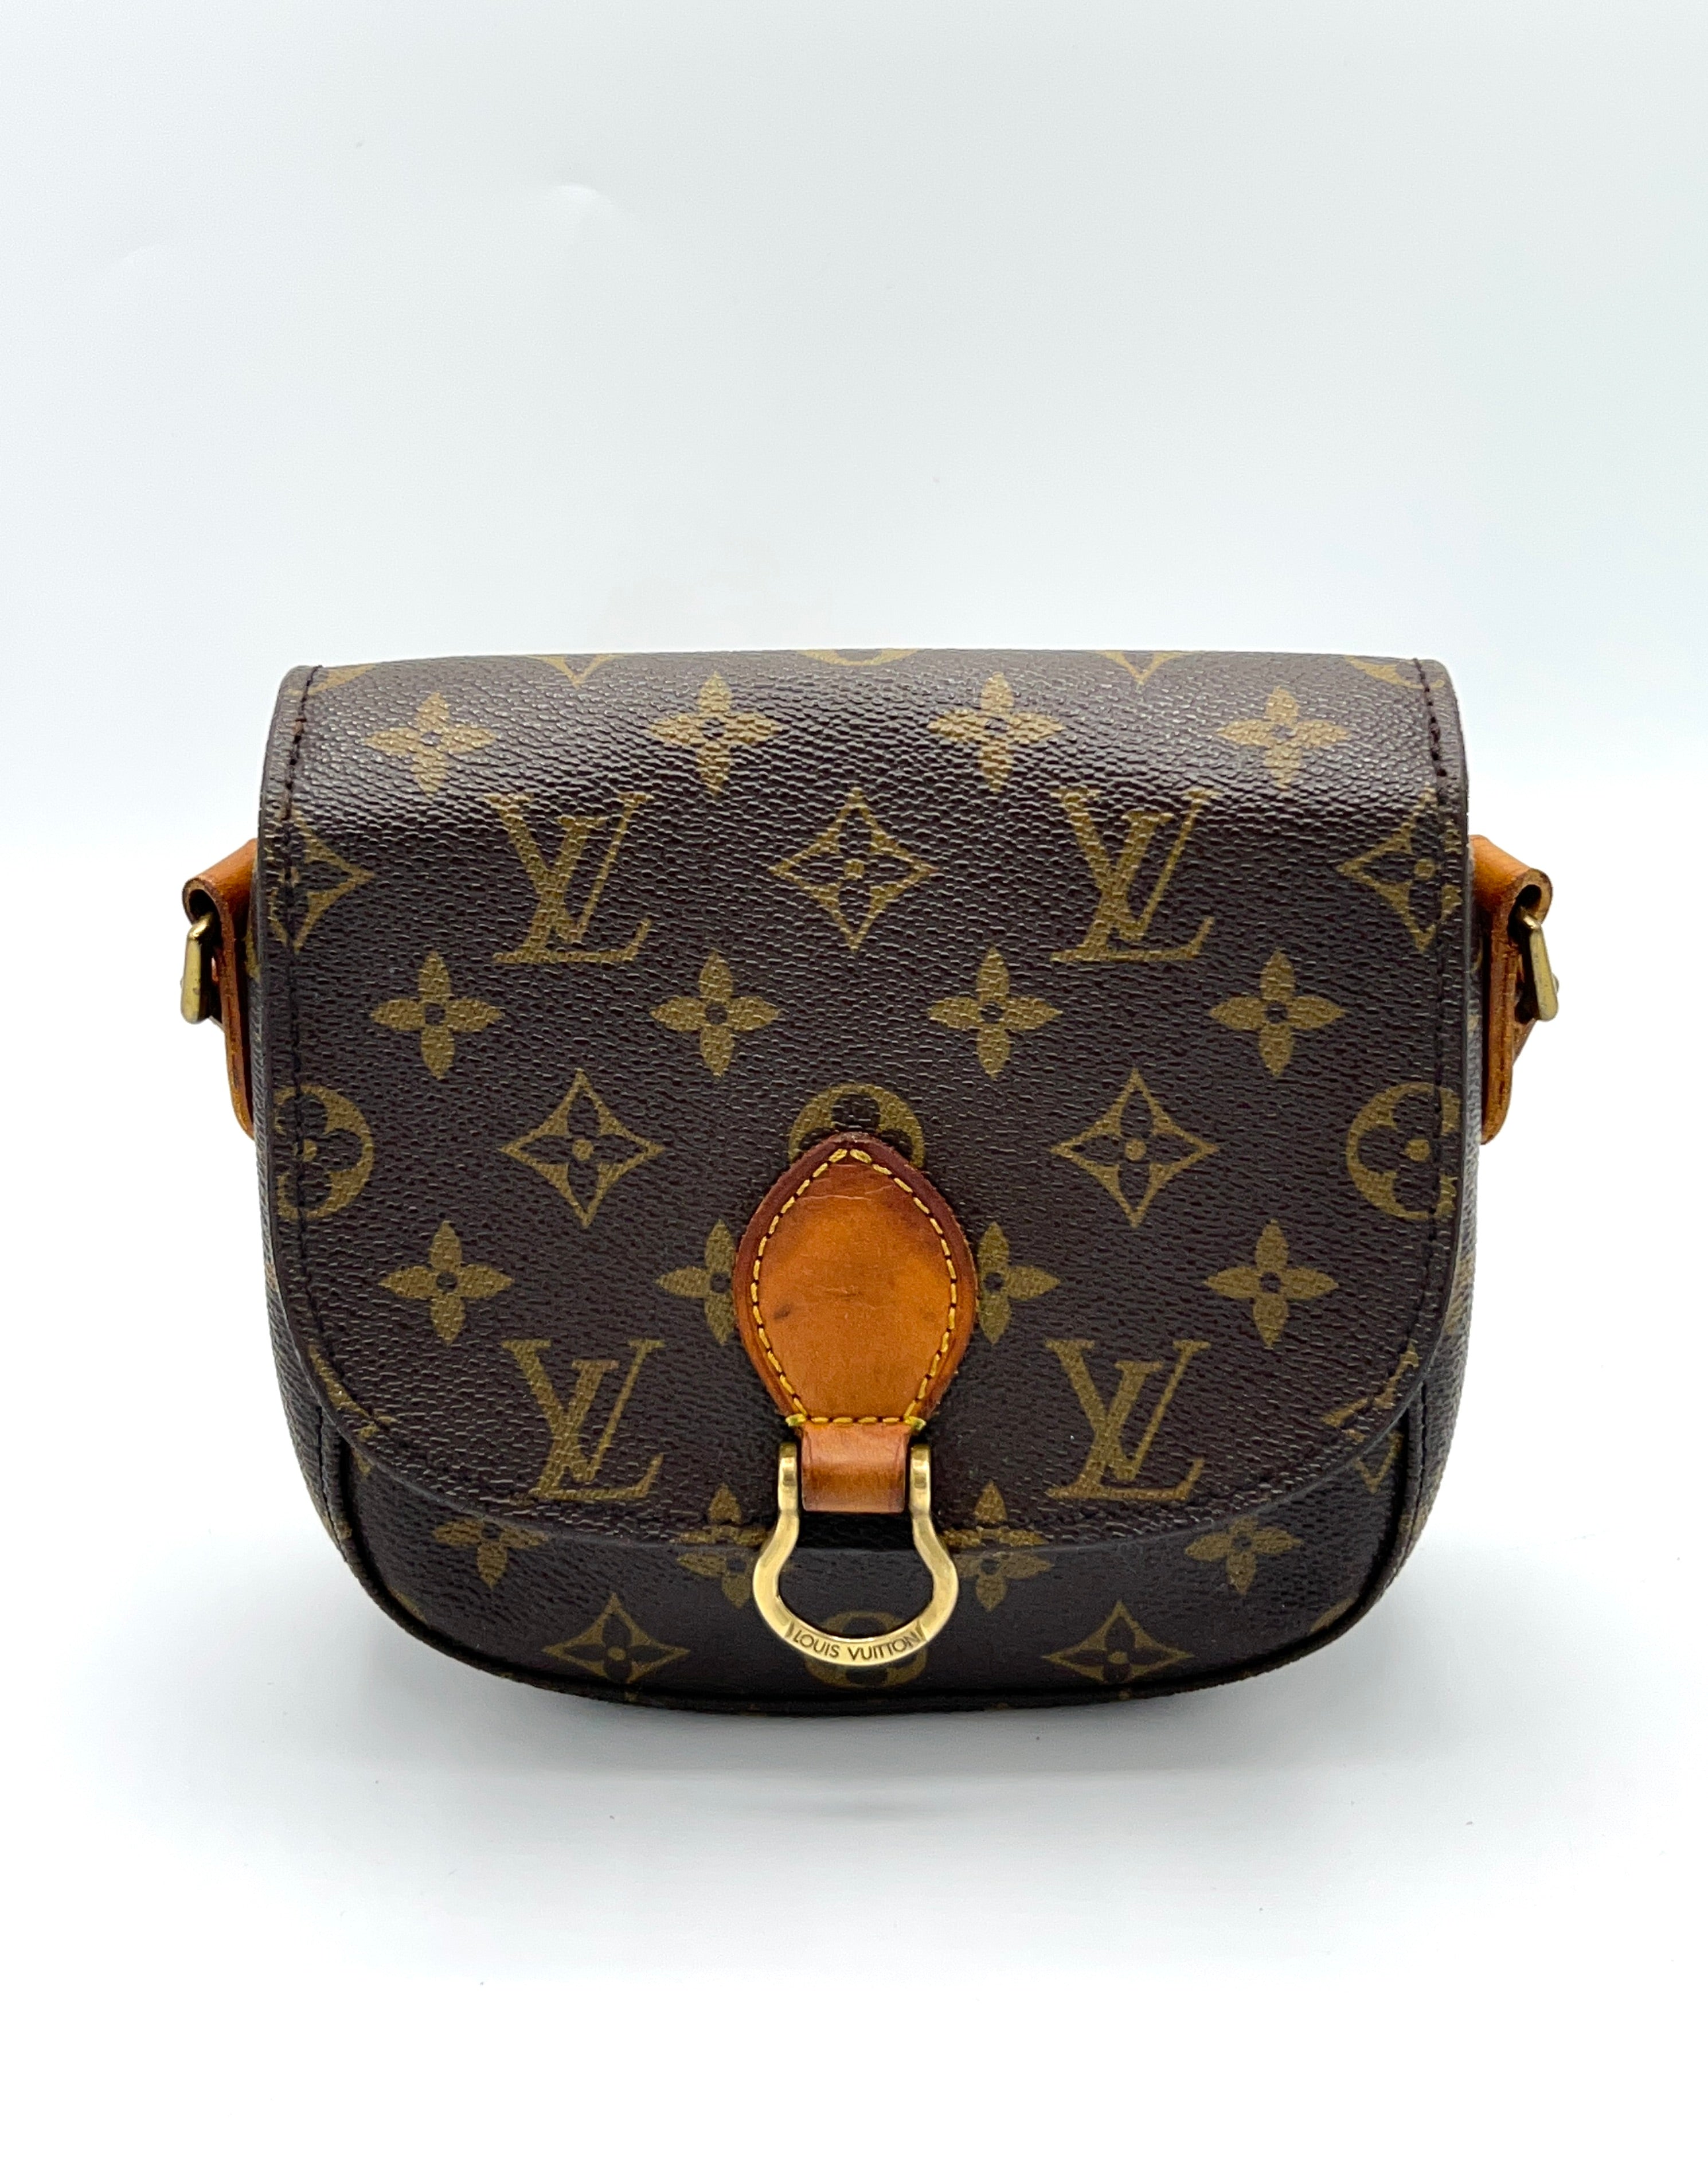 Shop for Louis Vuitton Monogram Canvas Leather St. Cloud PM